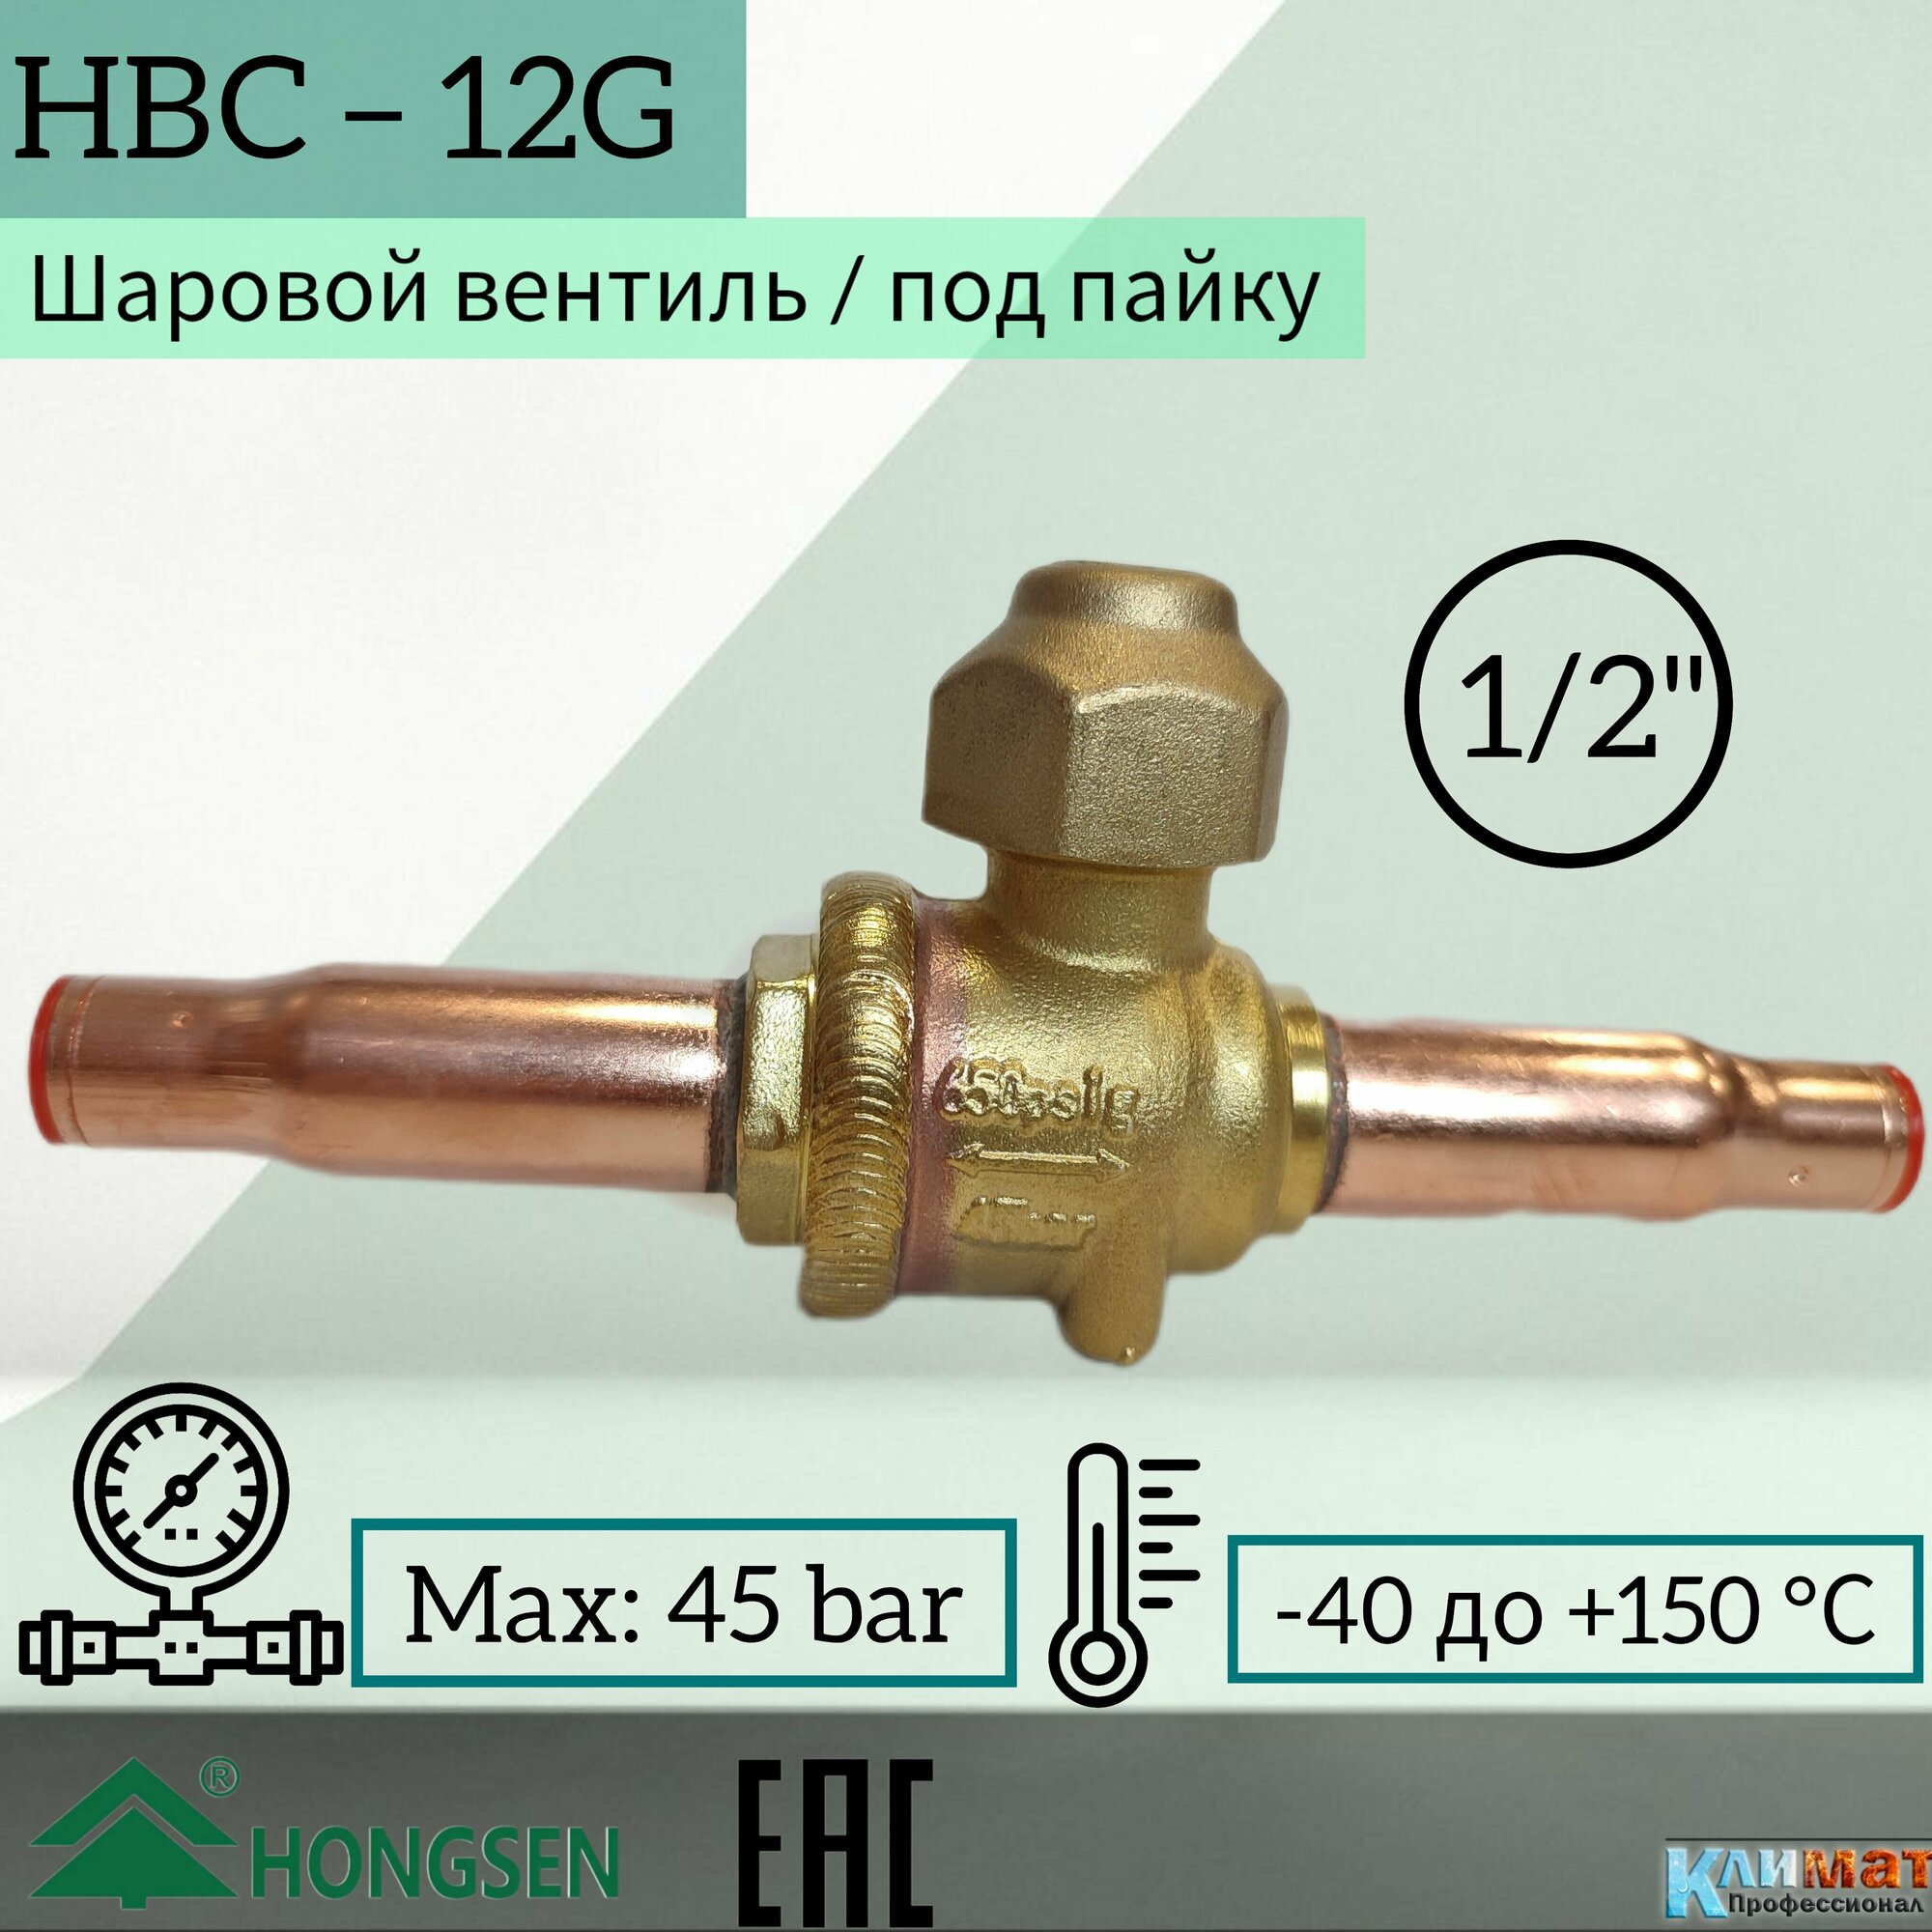 Шаровый вентиль Hongsen HBC-12G, 12мм, пайка